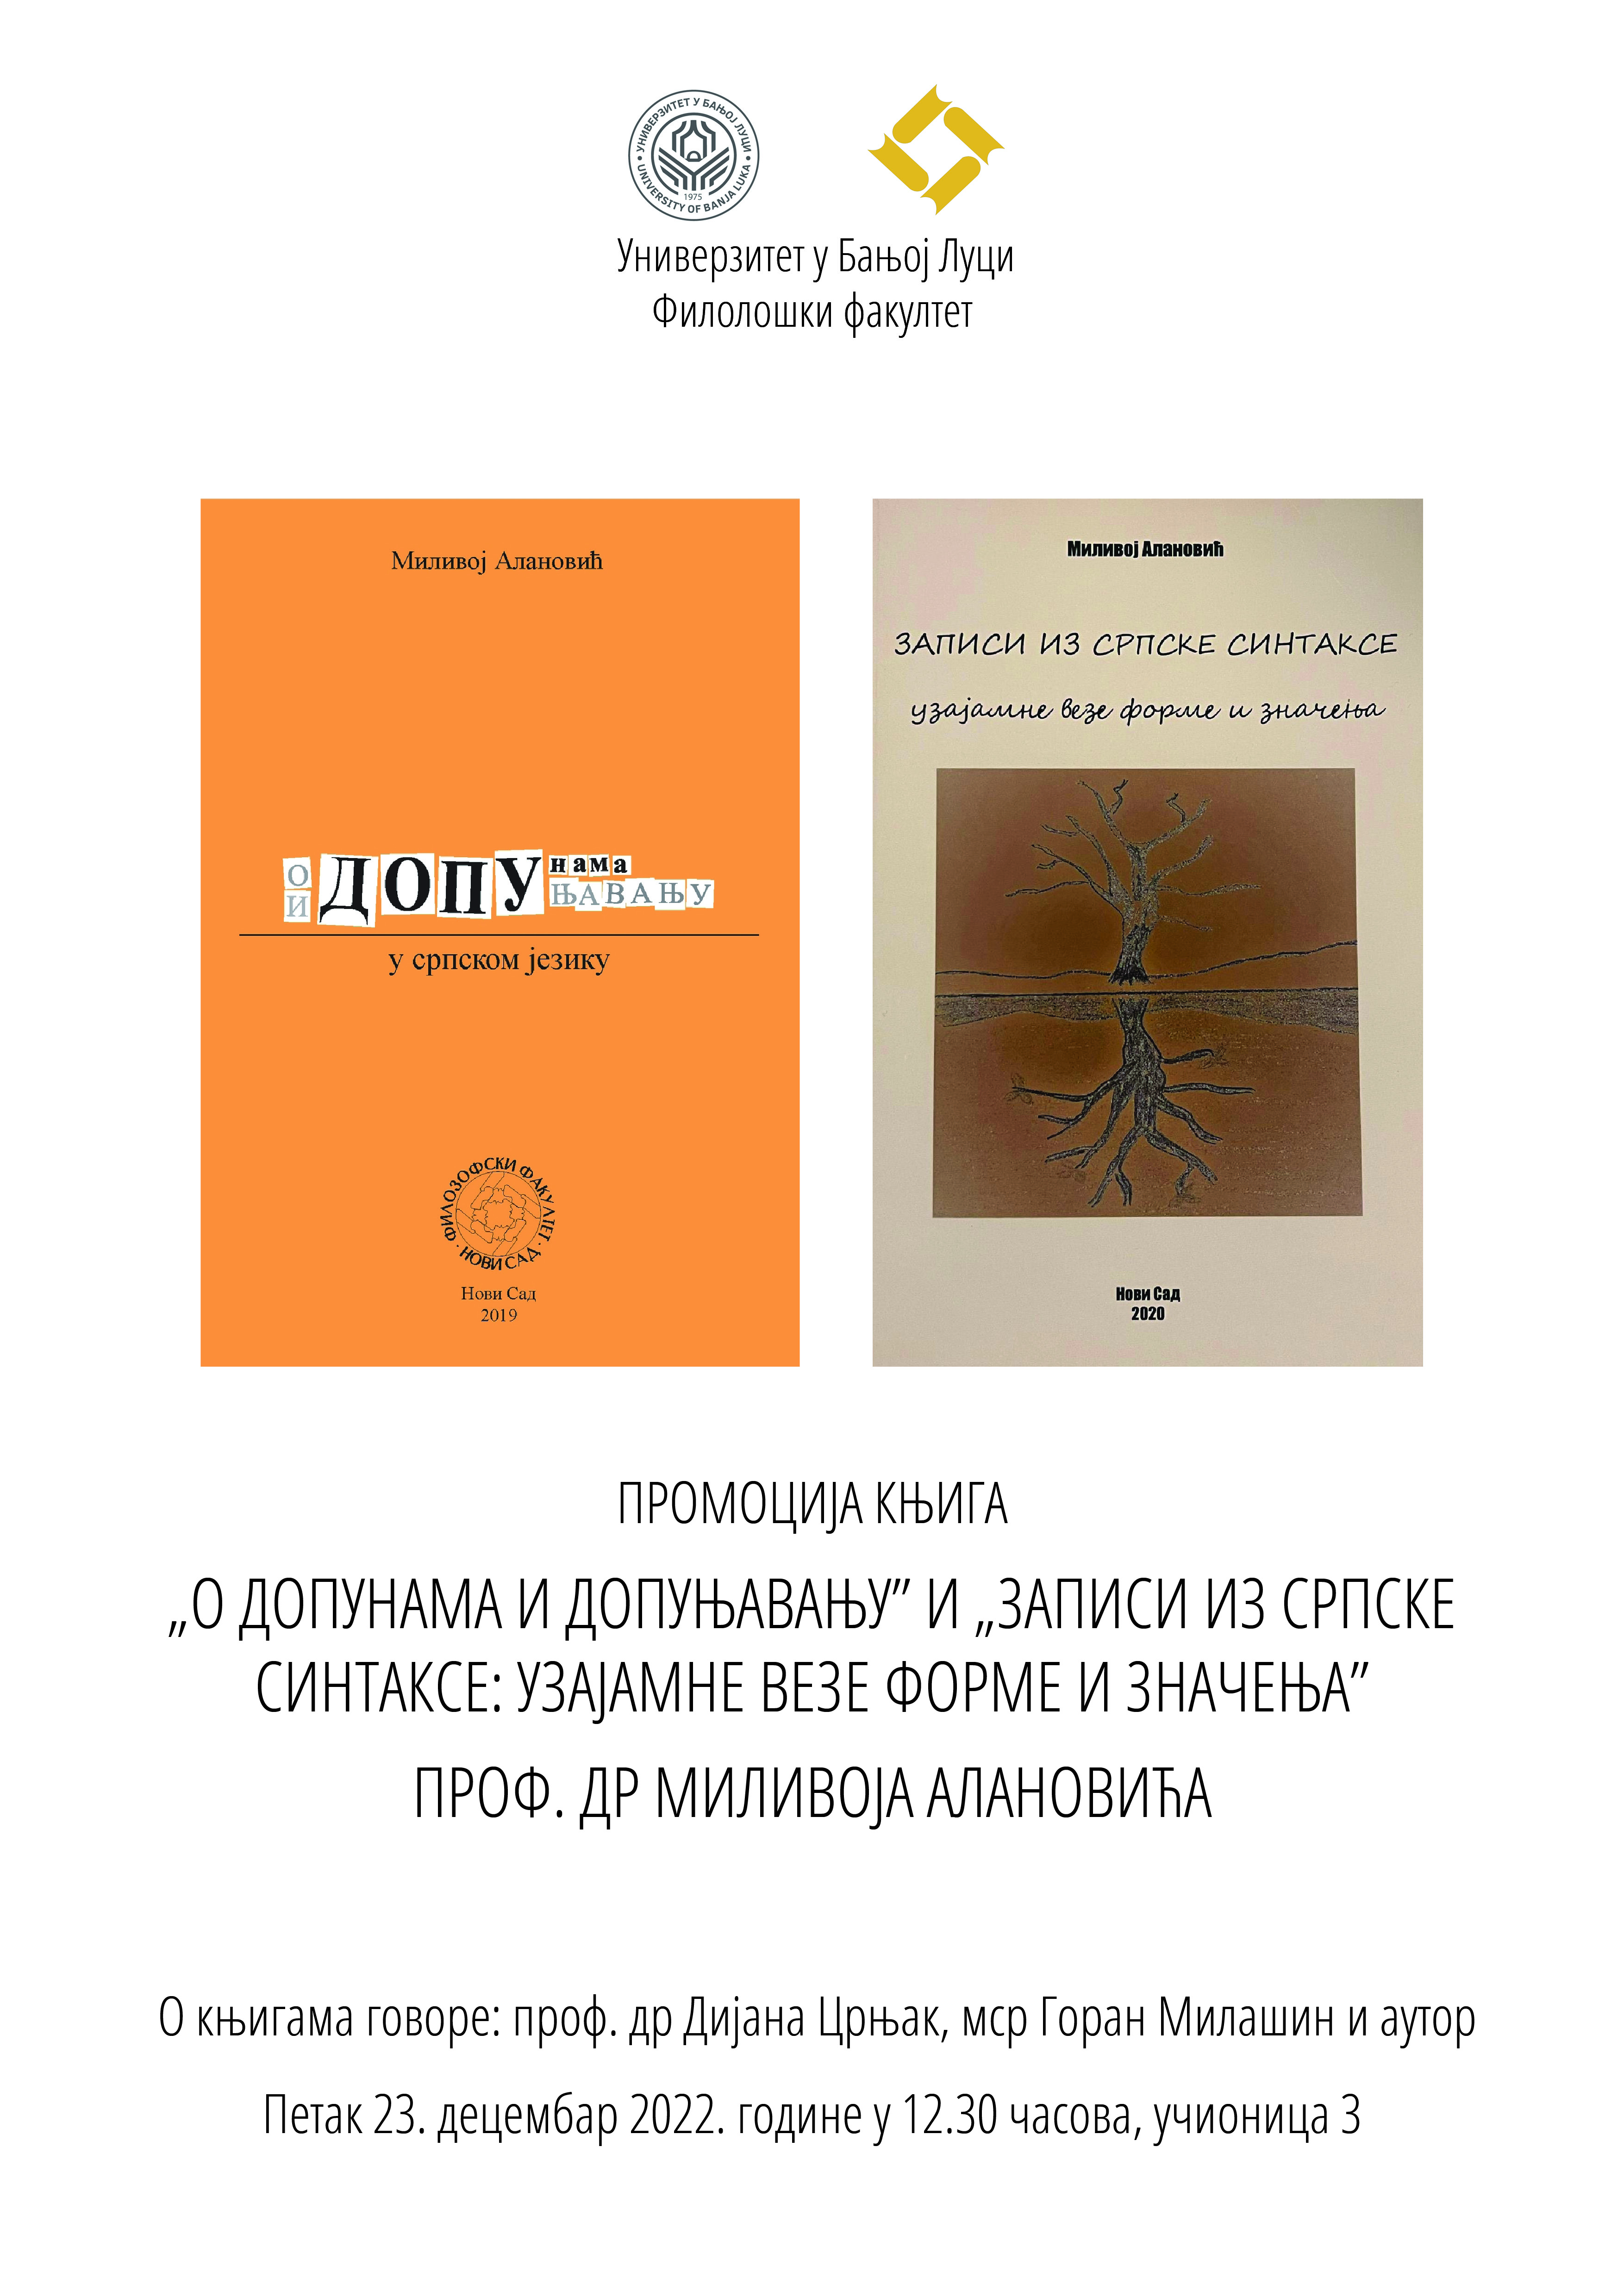 Промоција књига проф. др Миливоја Алановићаbla